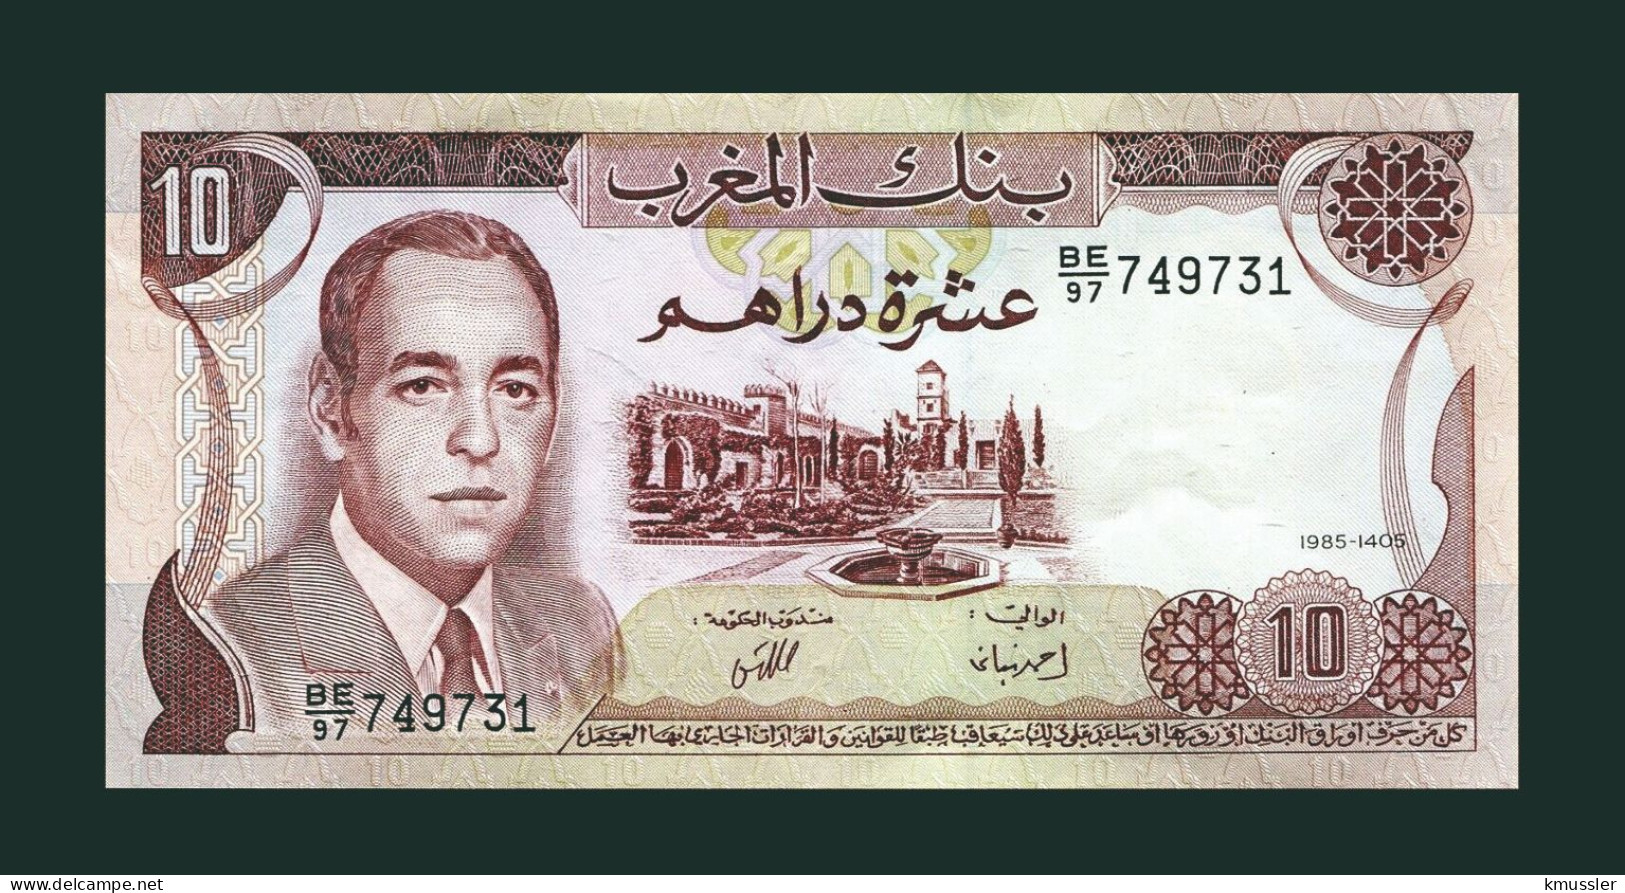 # # # Banknote Marokko (Morocco) 10 Dirham 1985 (P-57) UNC # # # - Morocco